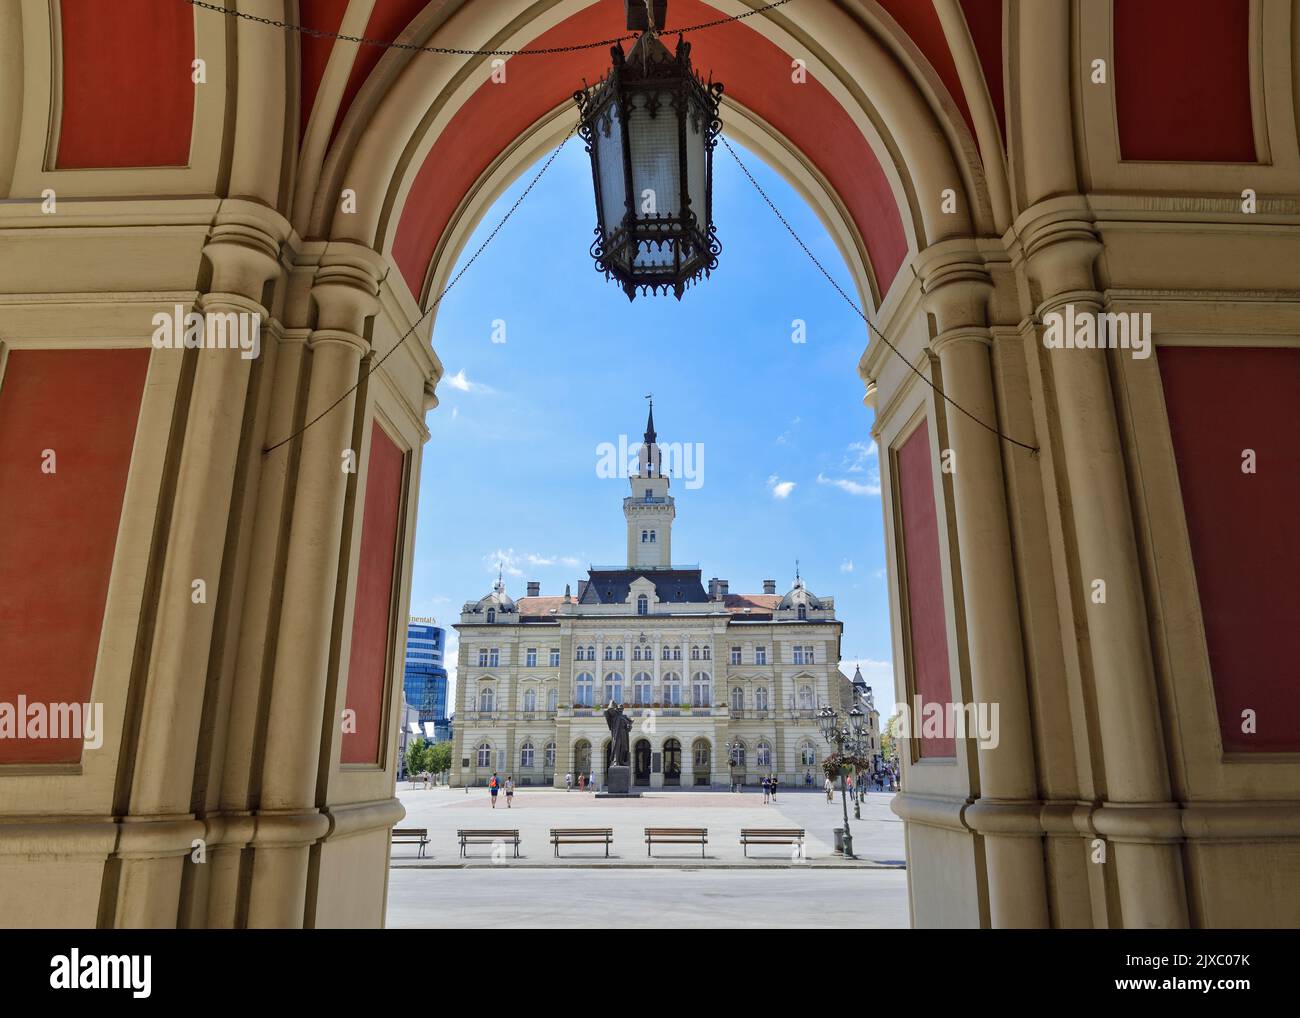 Hôtel de ville vu de dessous les arches de l'église du nom de Marie, place de la liberté, Novi Sad, Serbie Banque D'Images